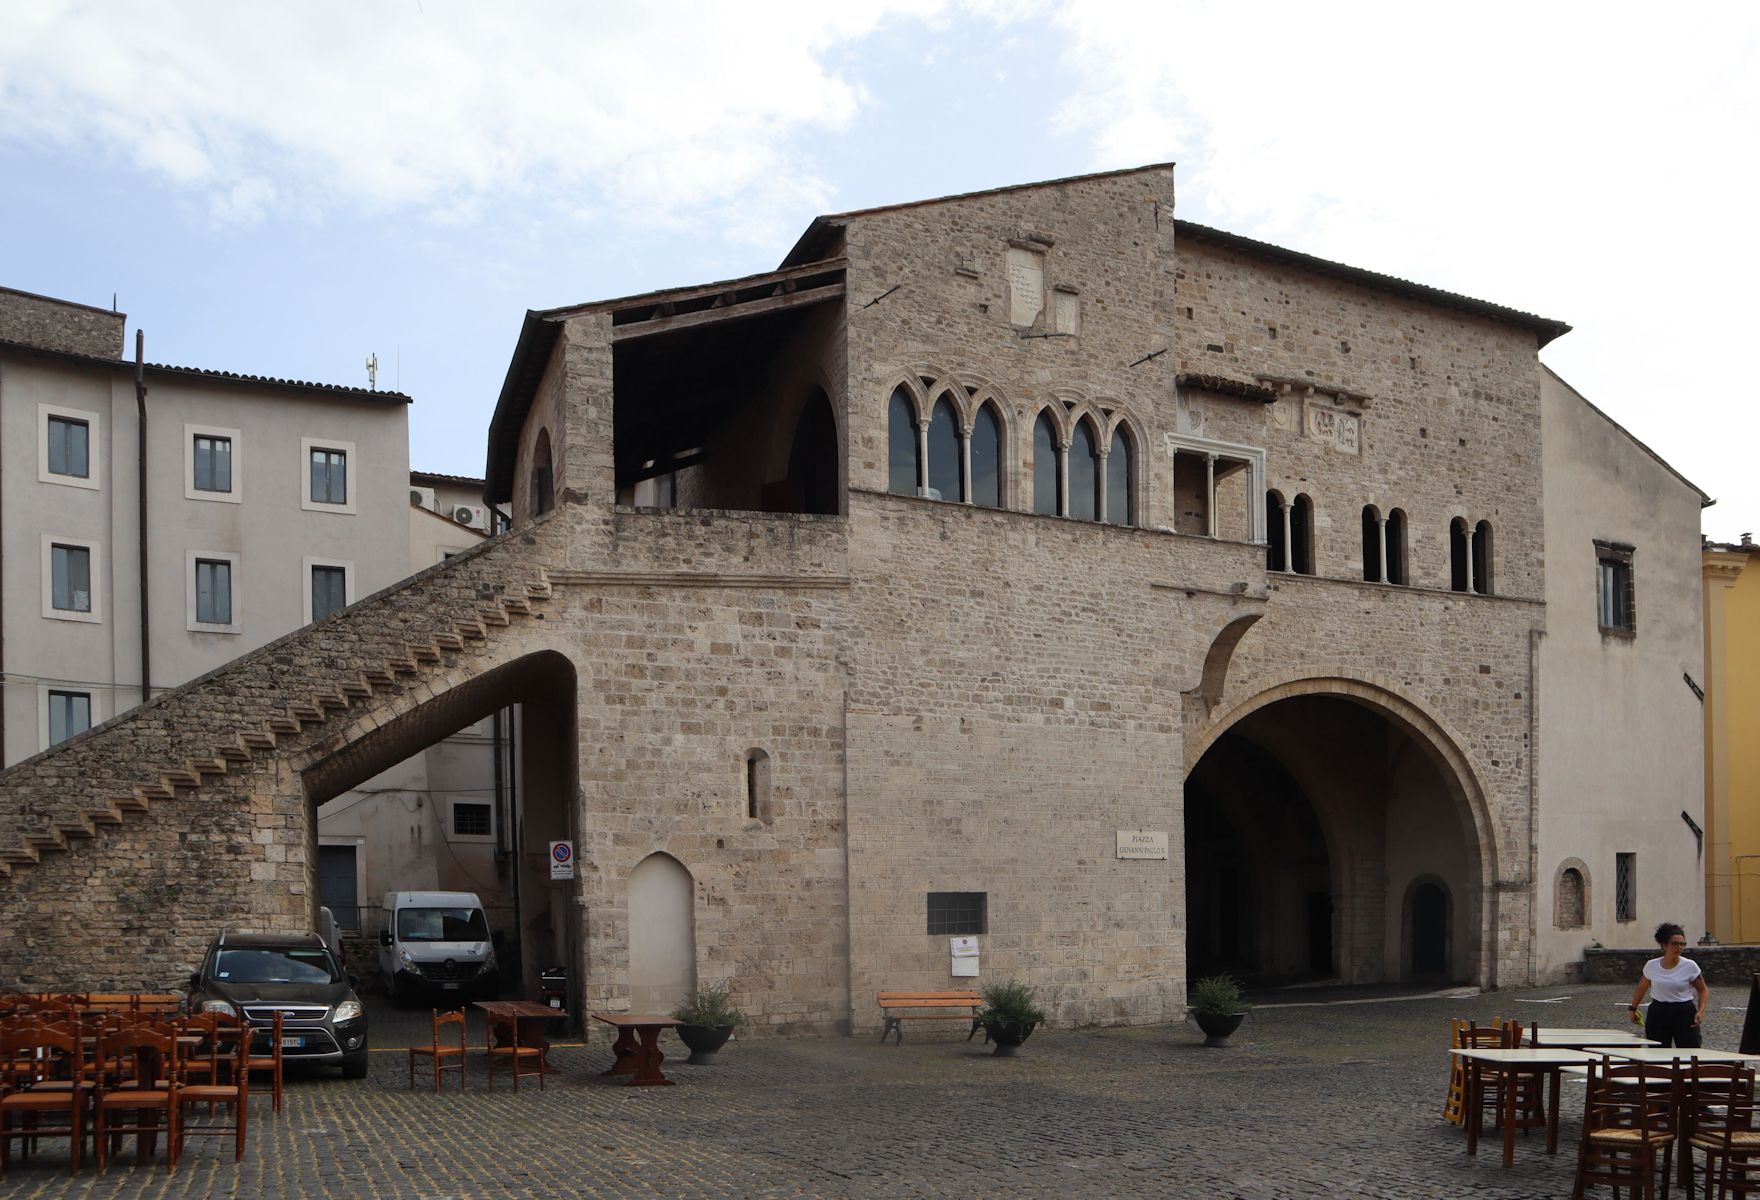 Palazzo della Ragione in Anagni, heute das Rathaus